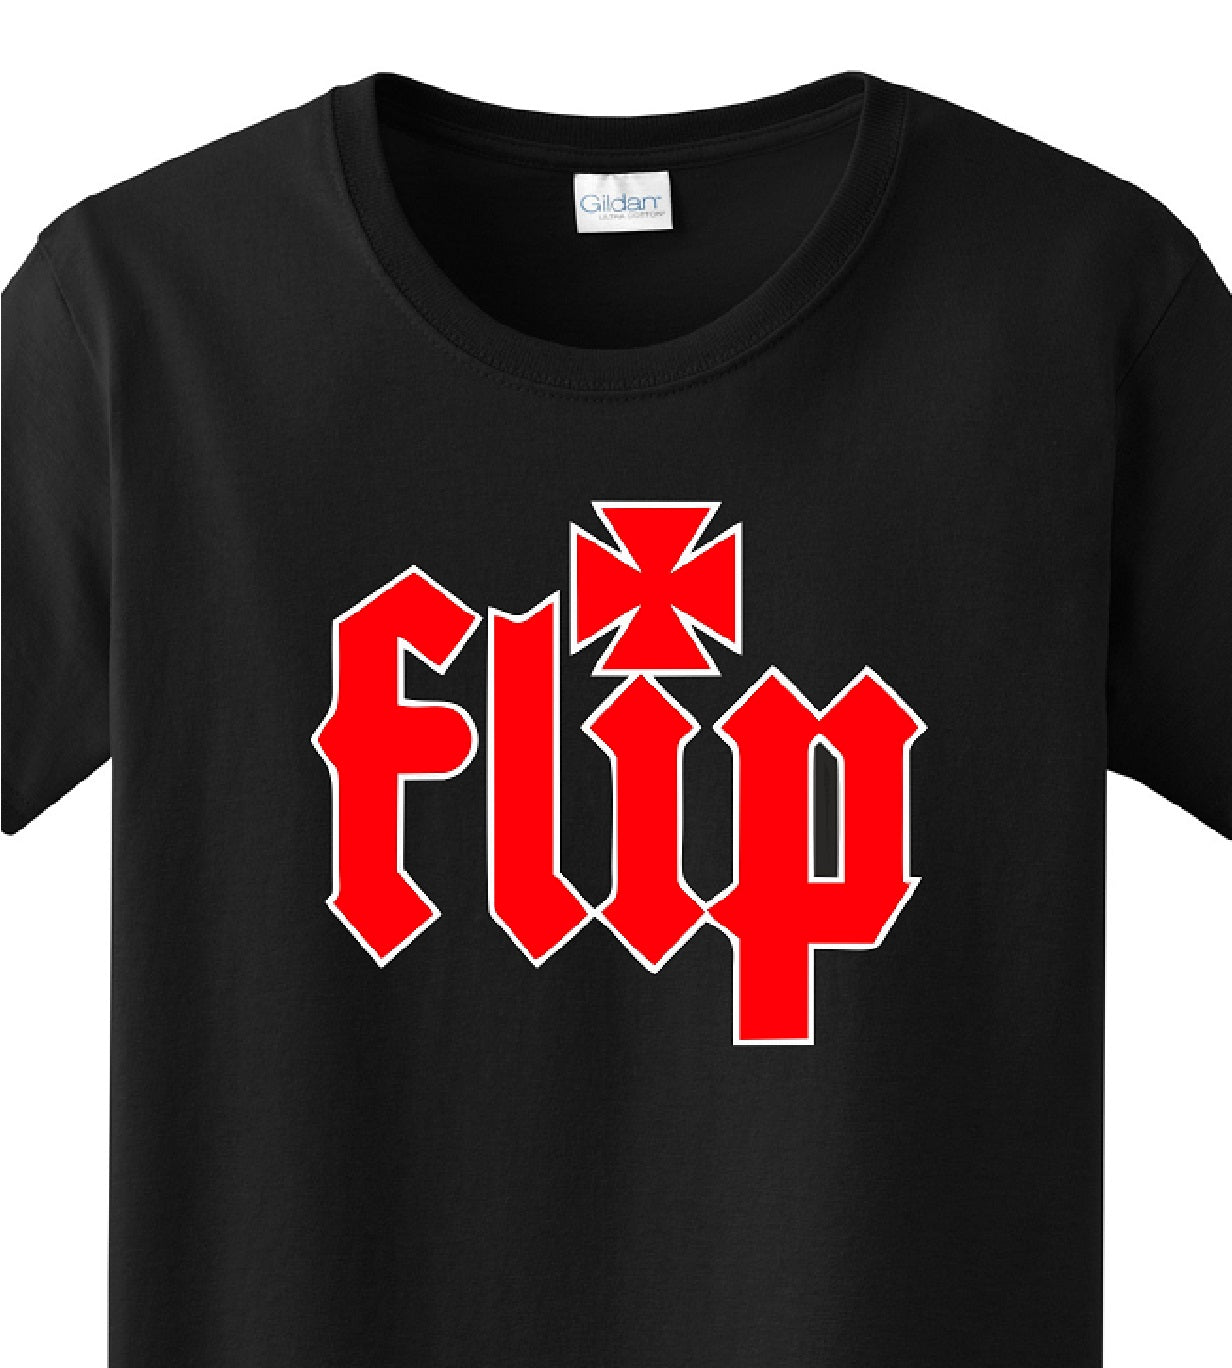 Skate Men's Shirt - Flip (Black) - MYSTYLEMYCLOTHING